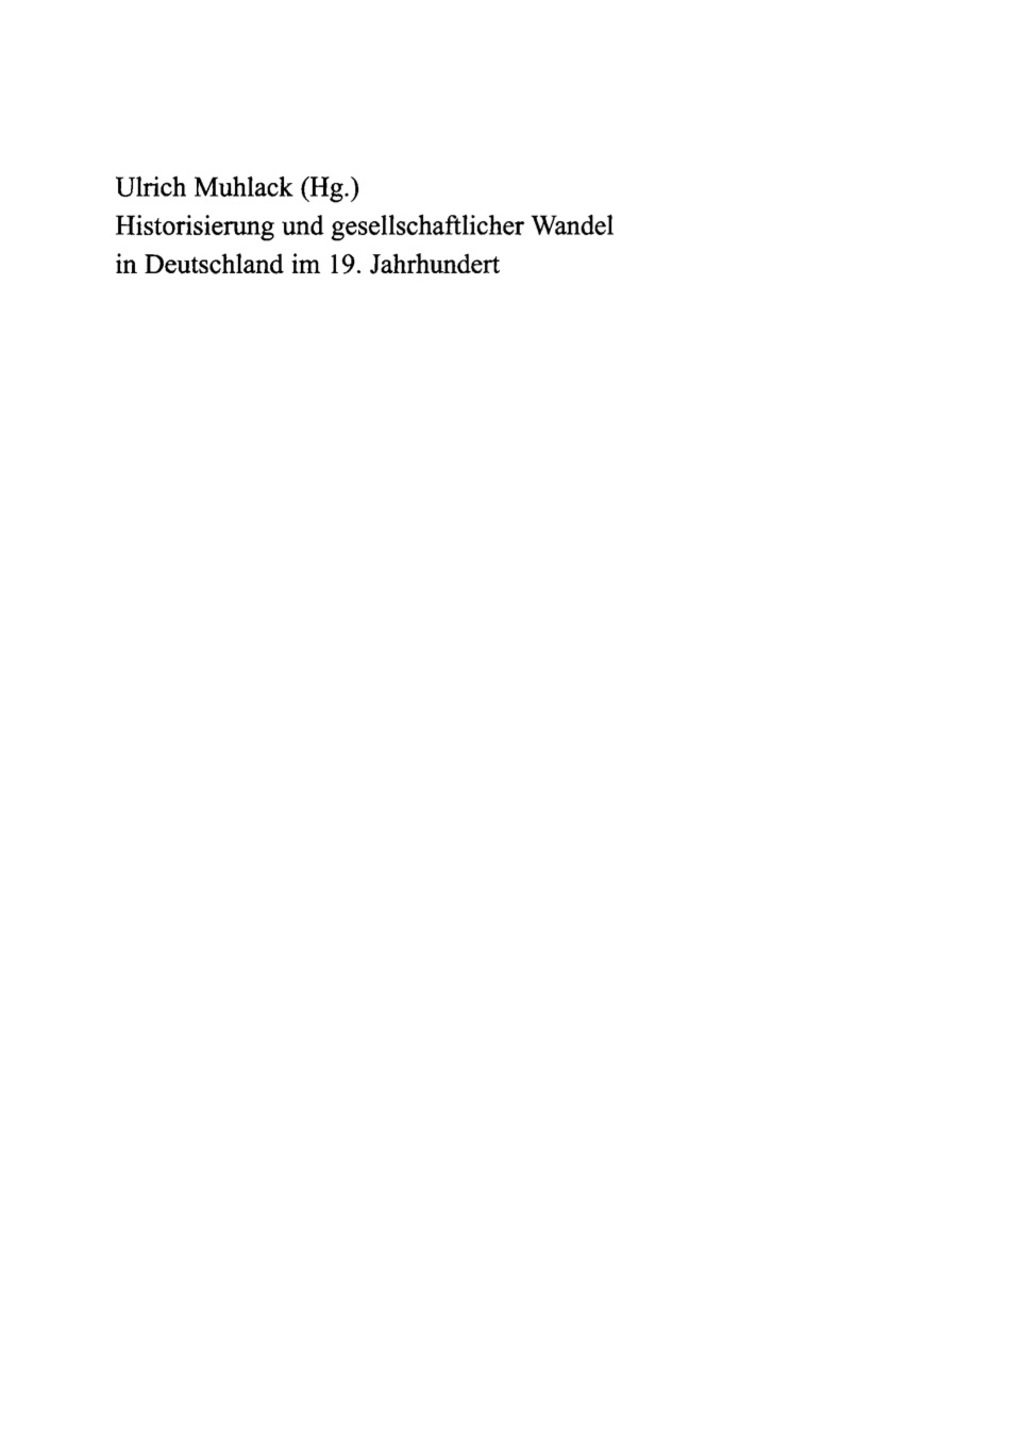 Historisierung und gesellschaftlicher Wandel in Deutschland im 19. Jahrhundert - 1st Edition (eBook)